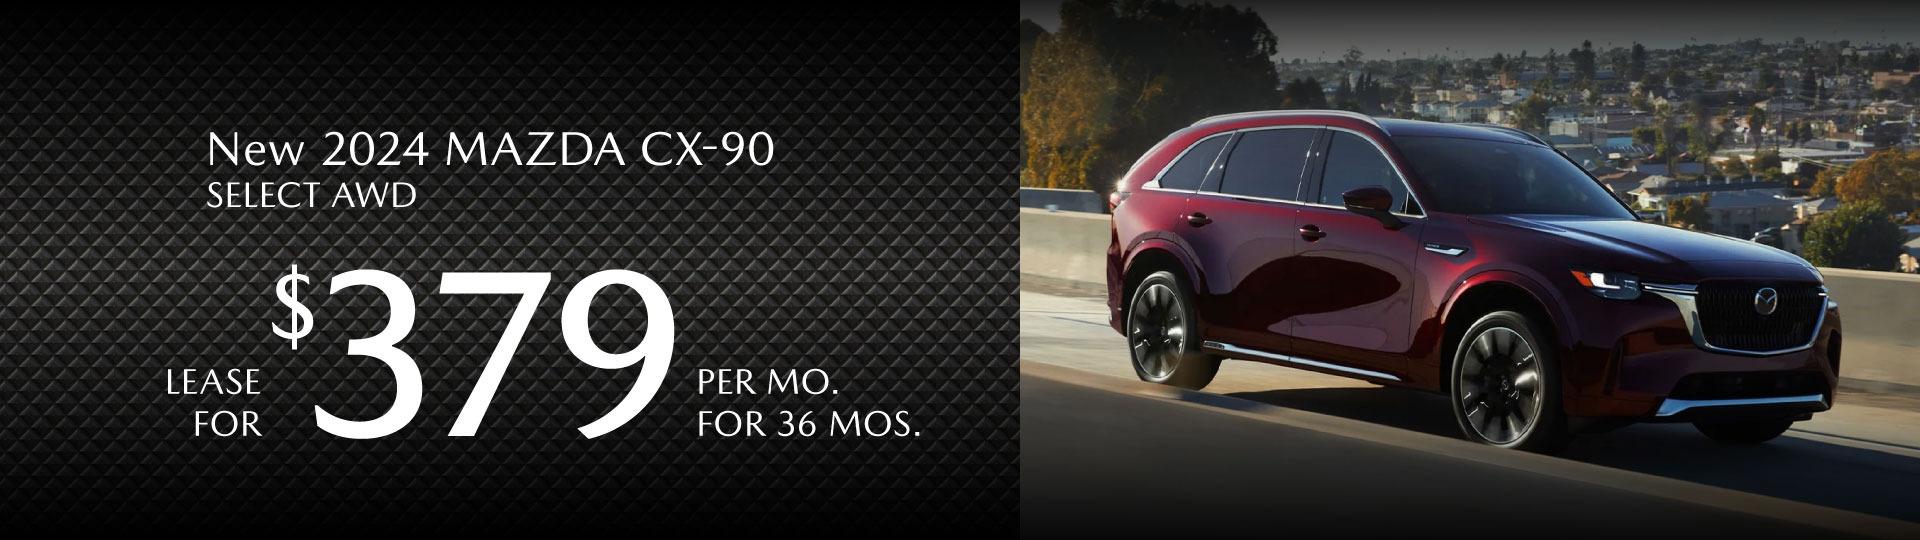 New 2024 Mazda CX-90